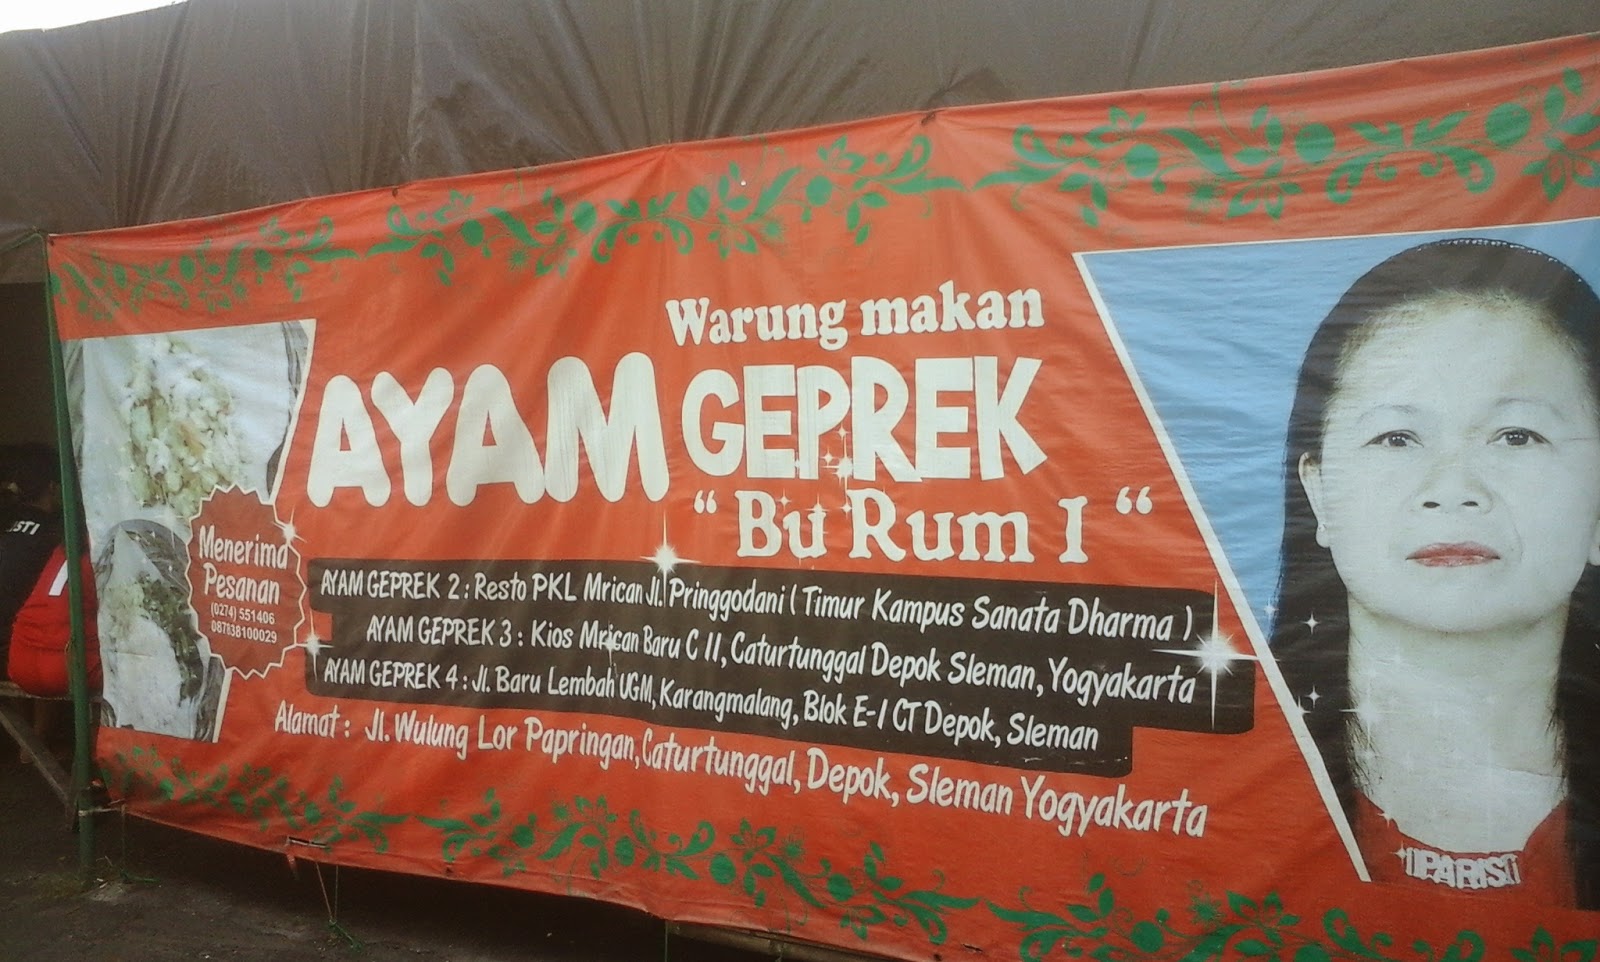 Ayam Geprek Bu Rum - Yogyakarta